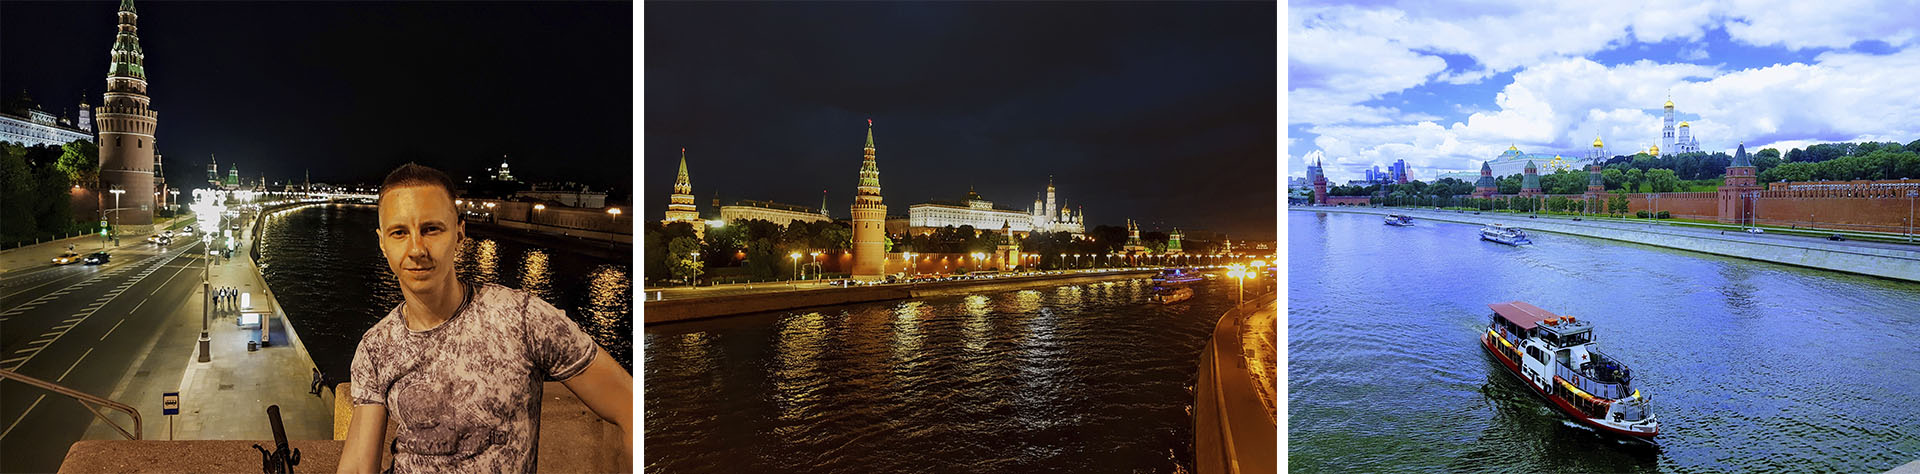 Я и мой город Москва, Кремль.